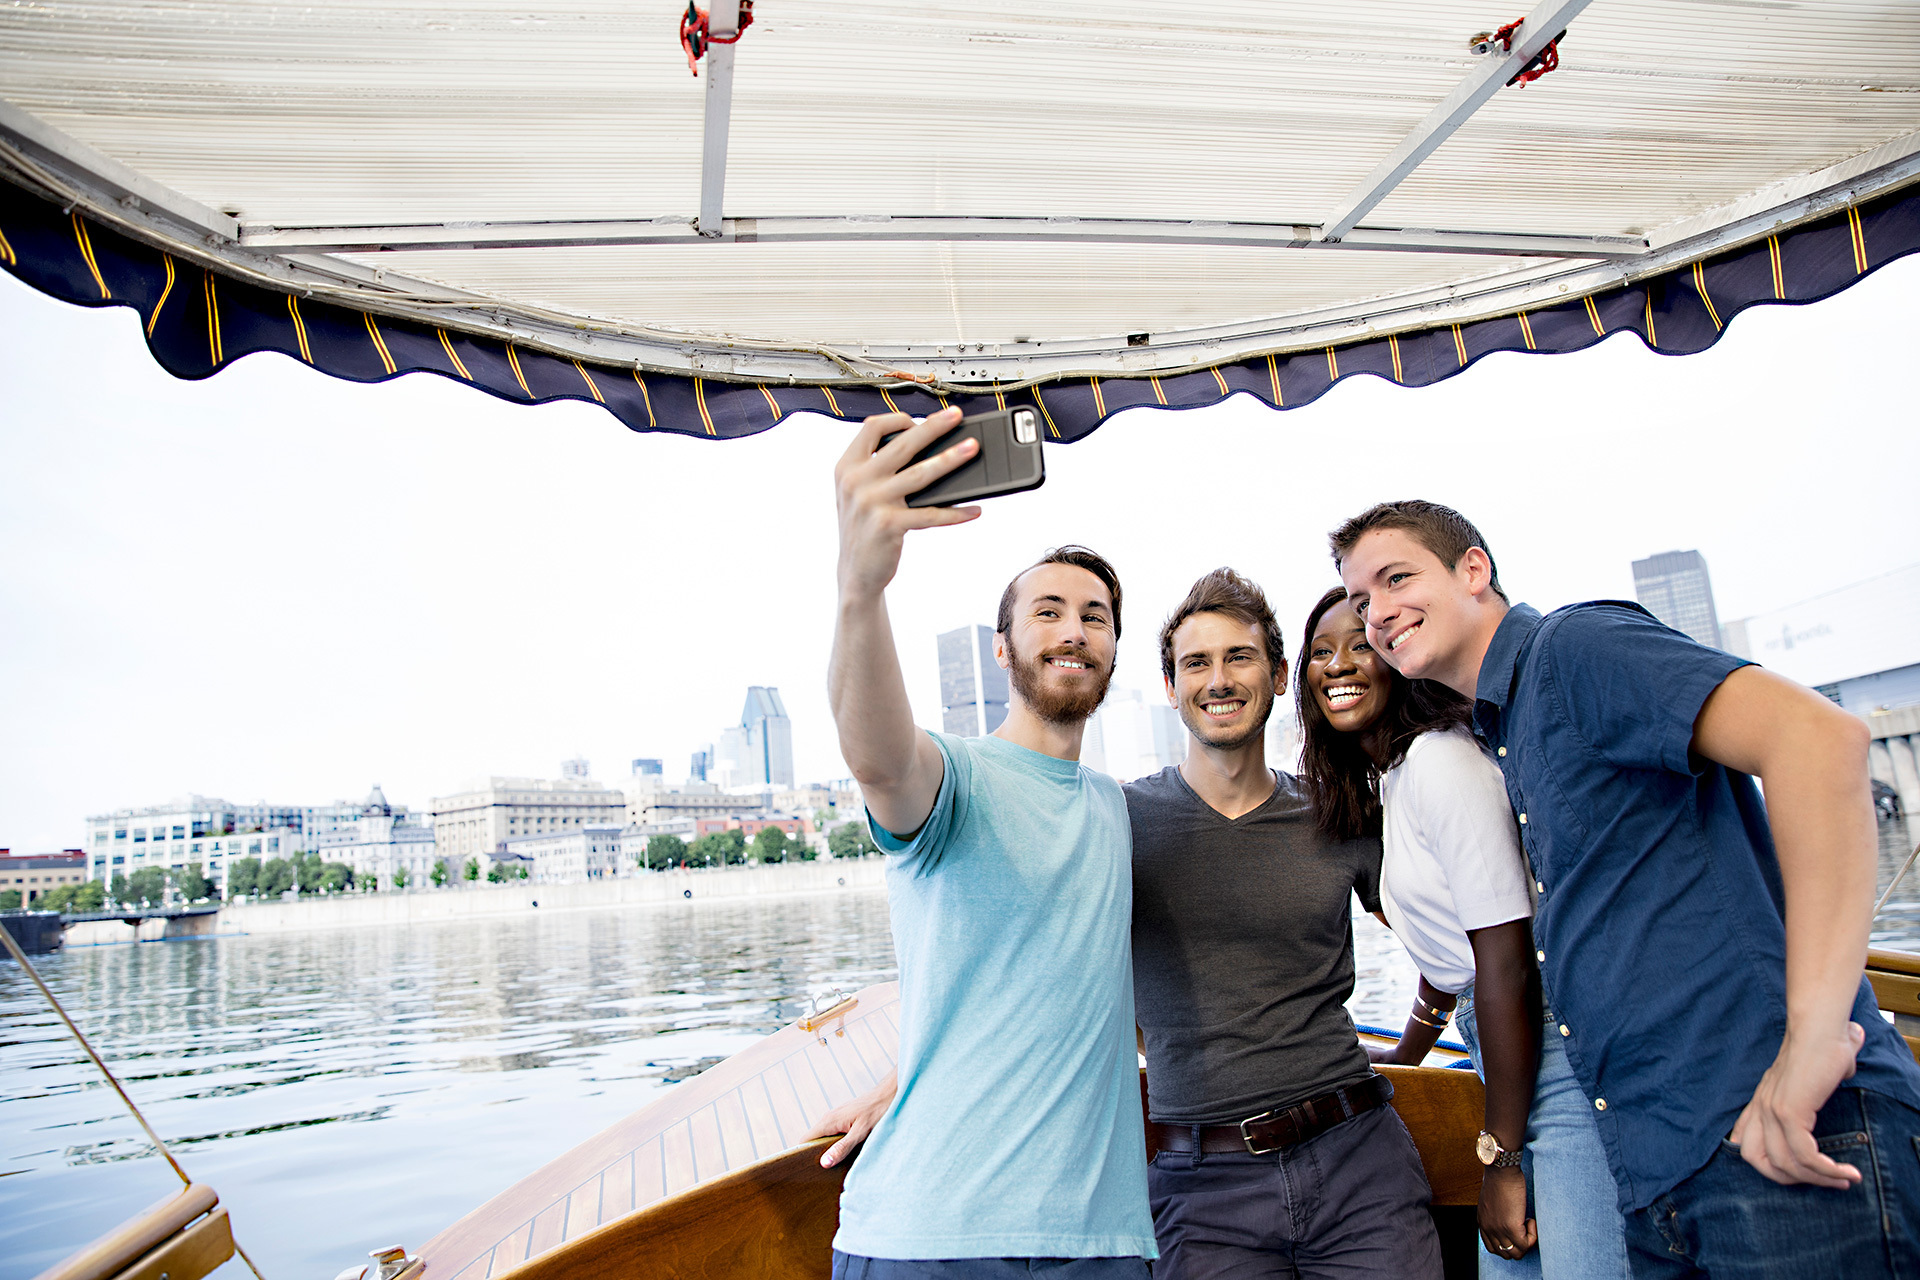 Étudiants souriants prenant un selfie en bateau, ville en arrière-plan.